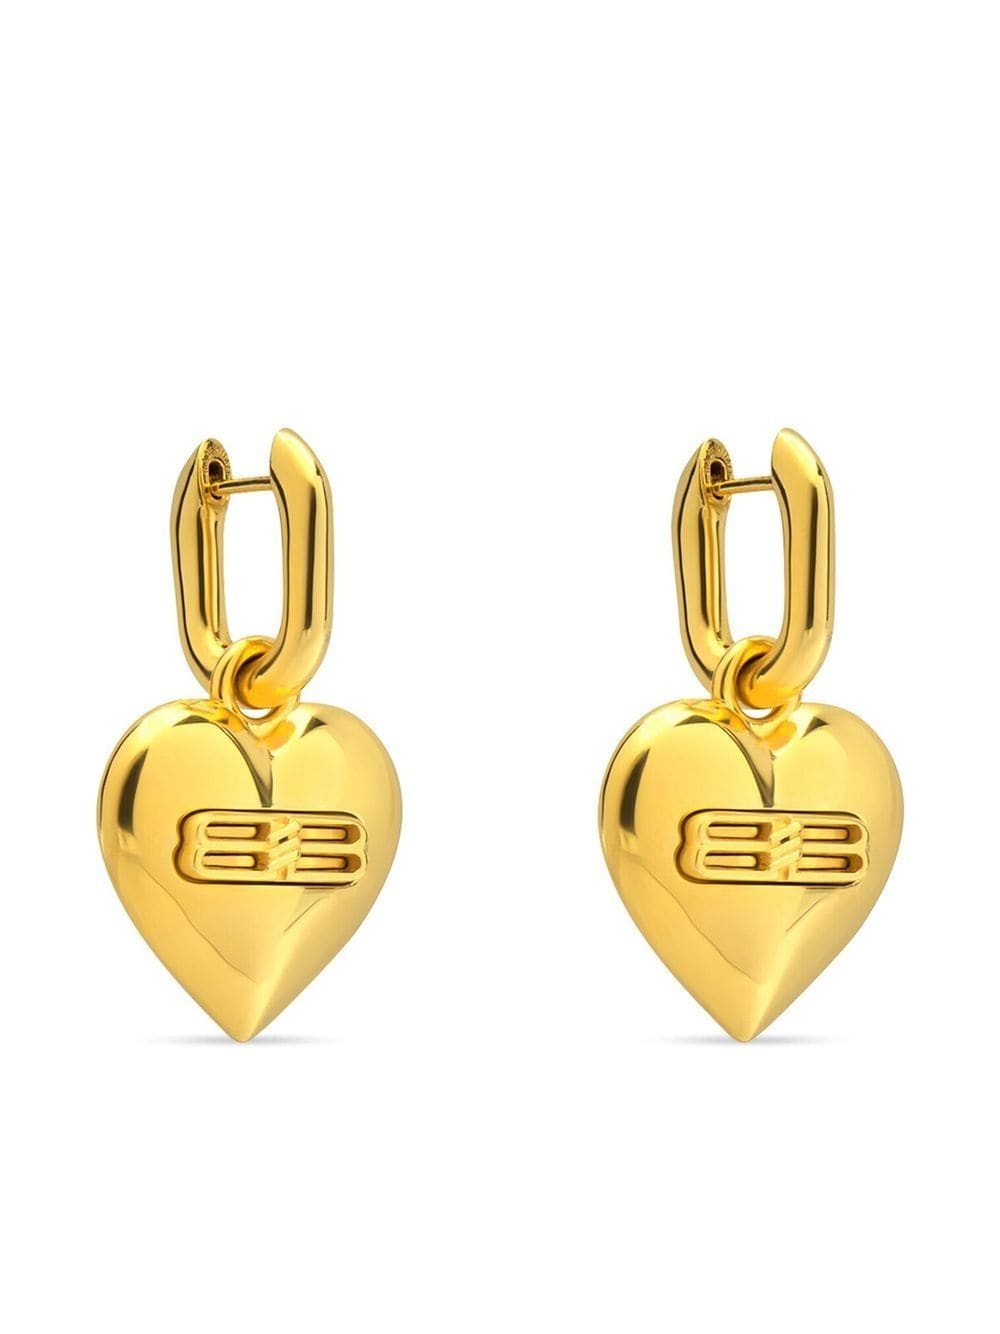 BB heart-shaped earrings - 2